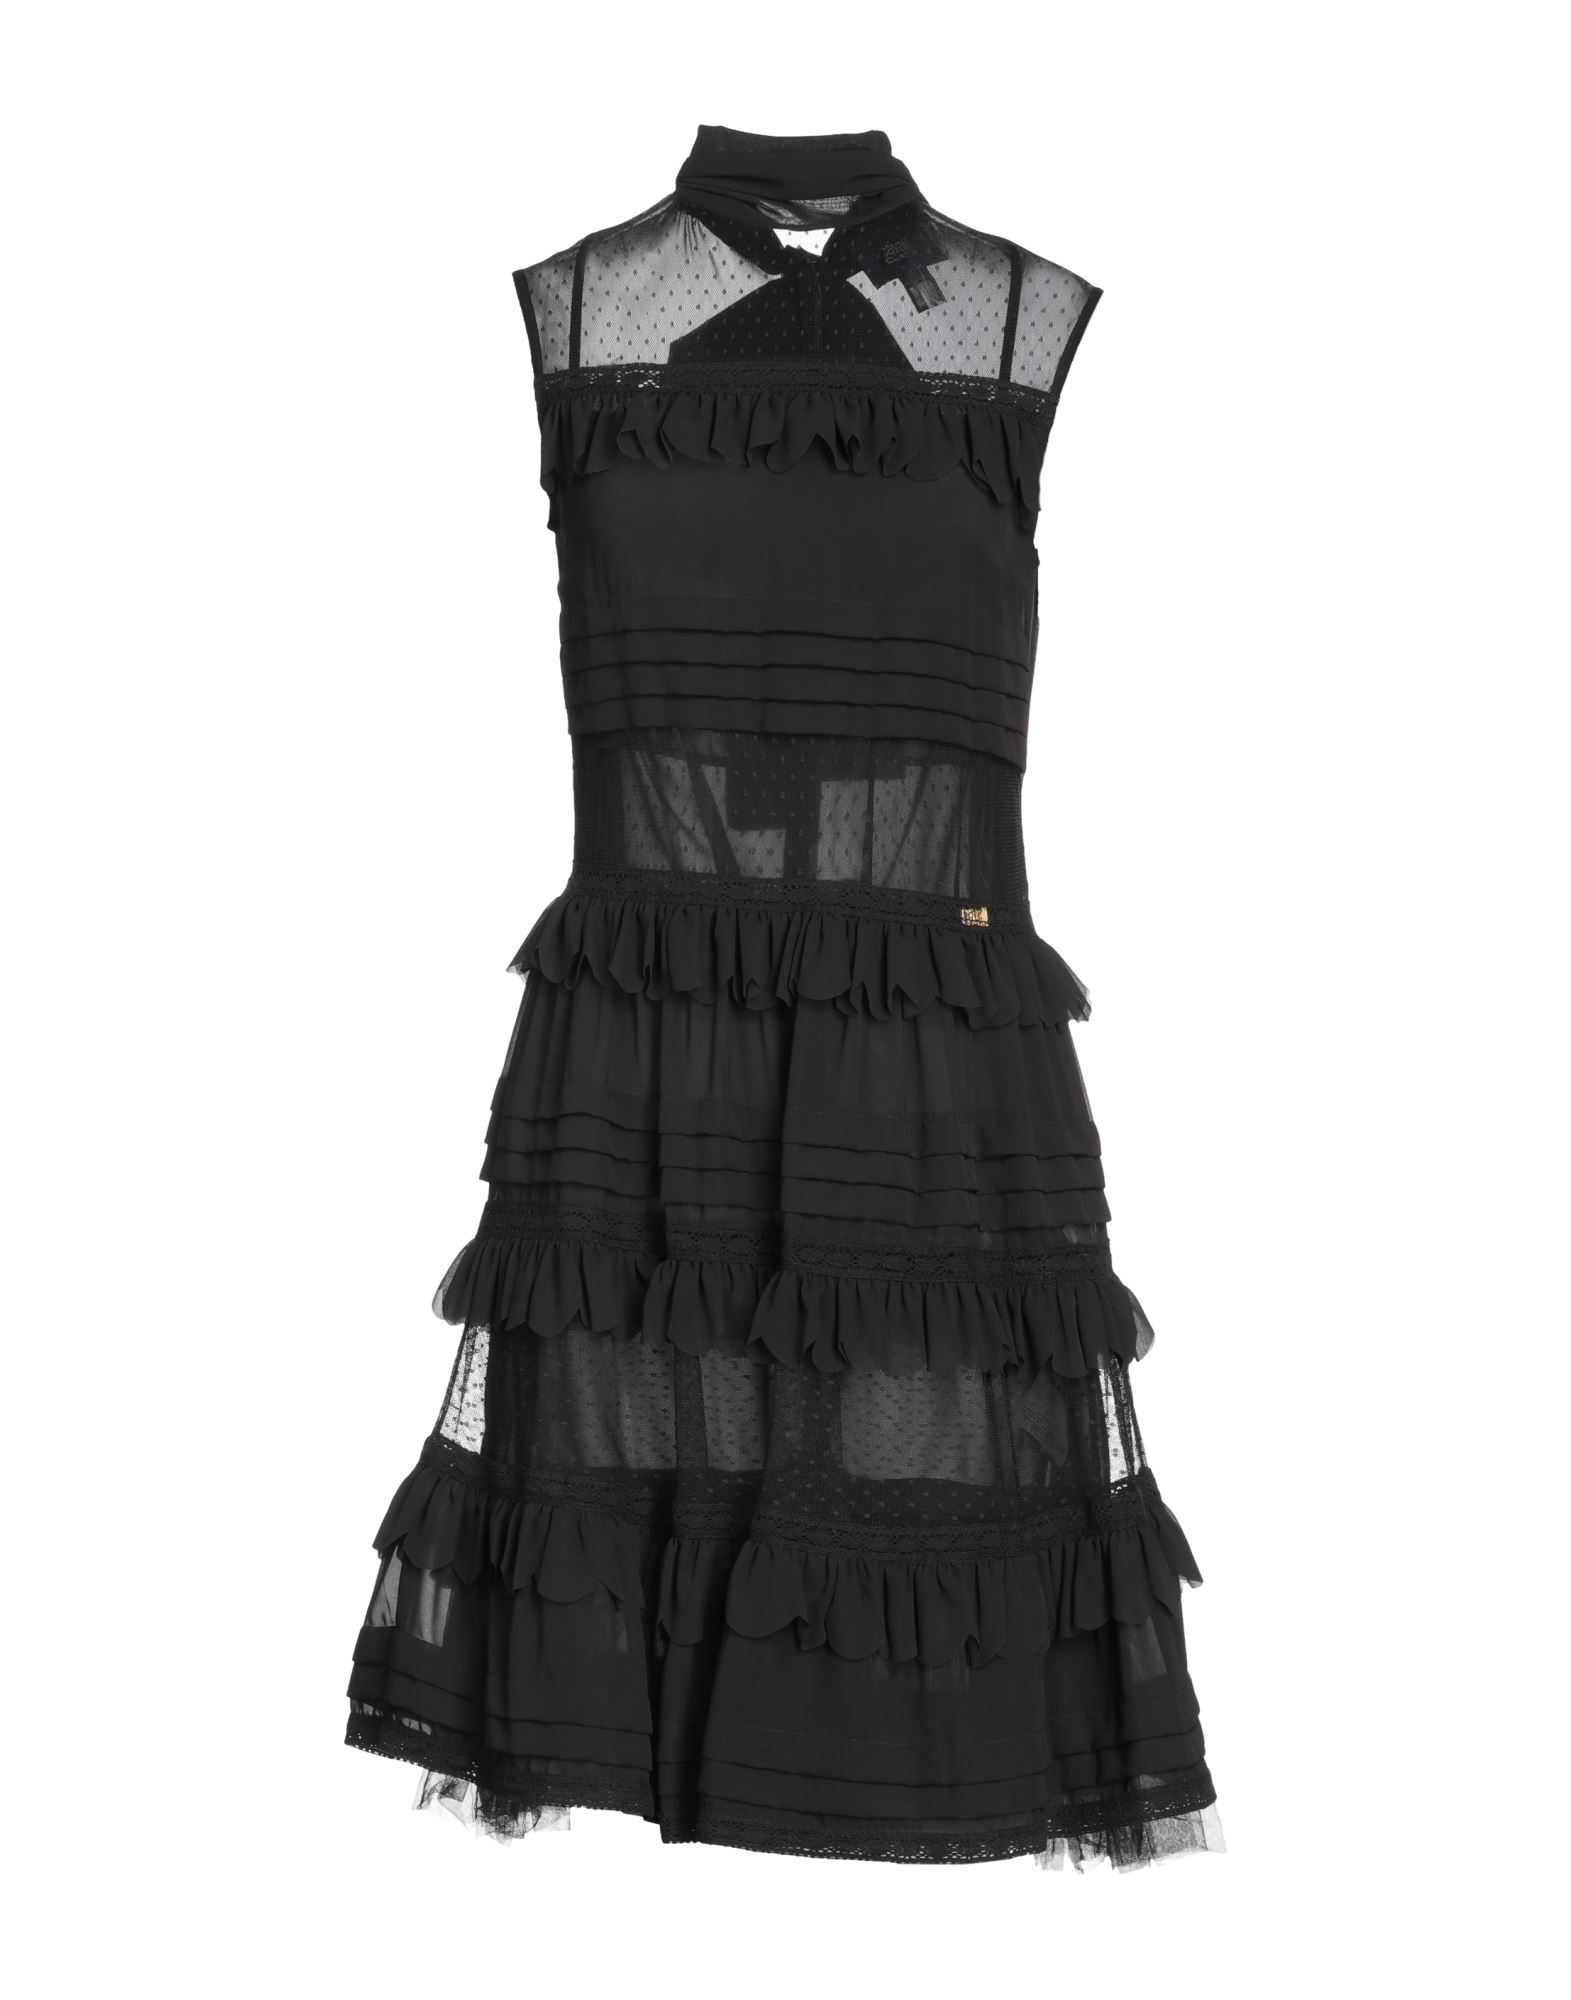 Cavalli Class Short Dresses In Black